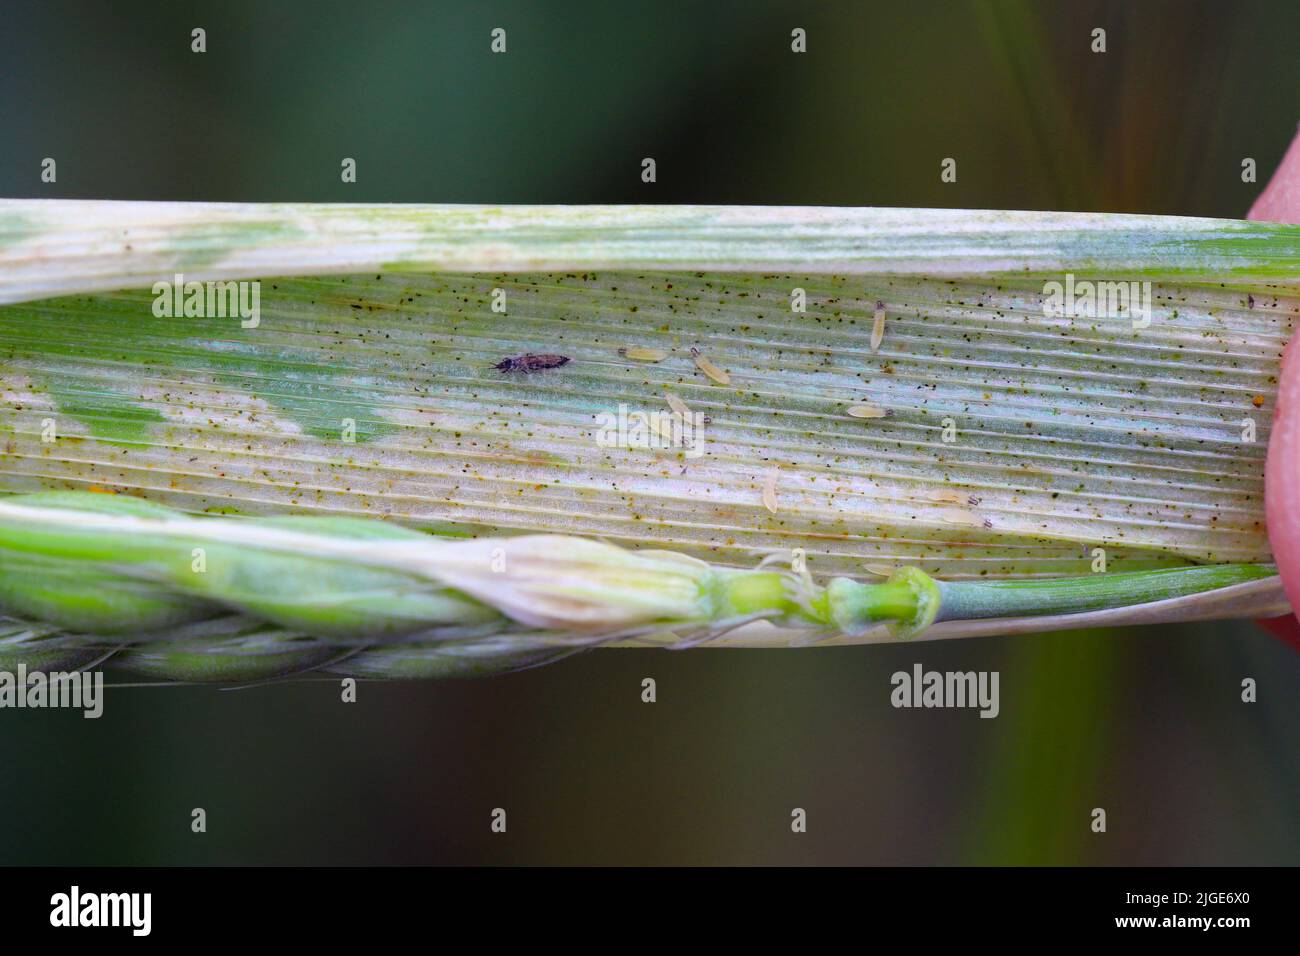 Durch Thripse geschädigte Gerstenpflanzen. Flaggenblatt chlorotisch verfärbt. Insekten ernähren sich auf der Innenseite des Blattes, in der Nähe des Ohrs. Stockfoto